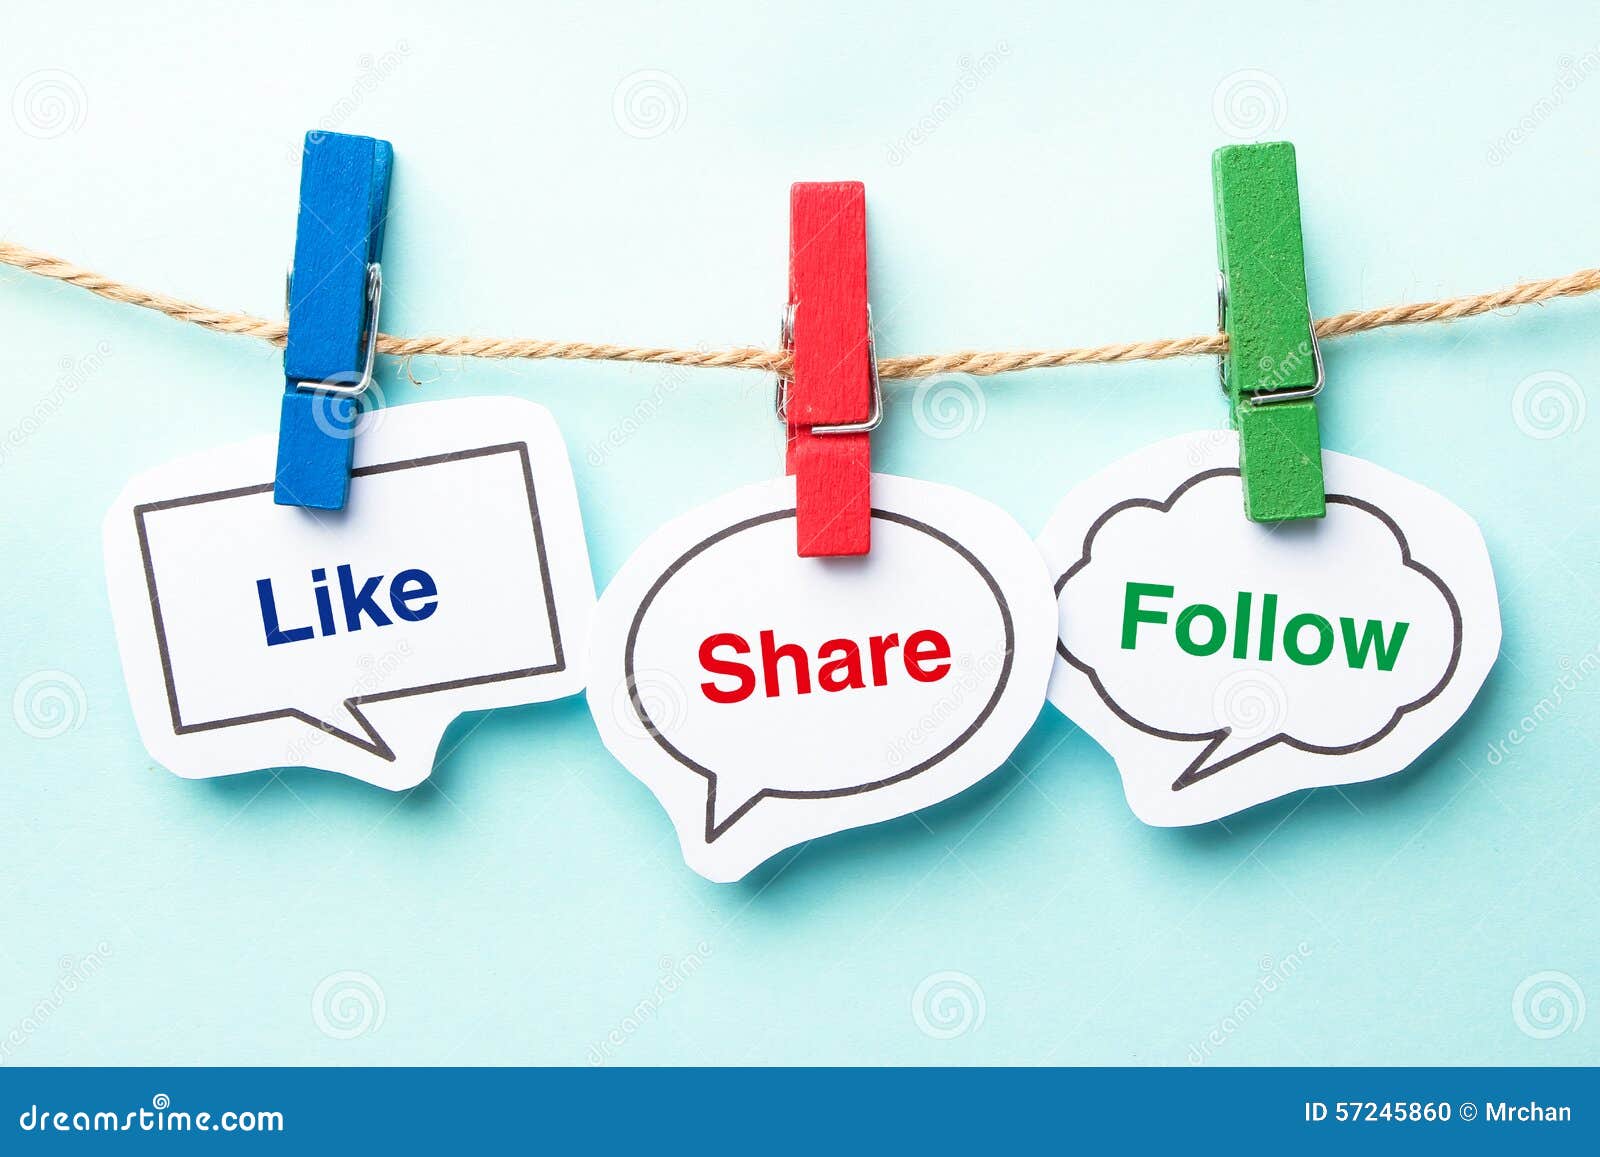 like share follow